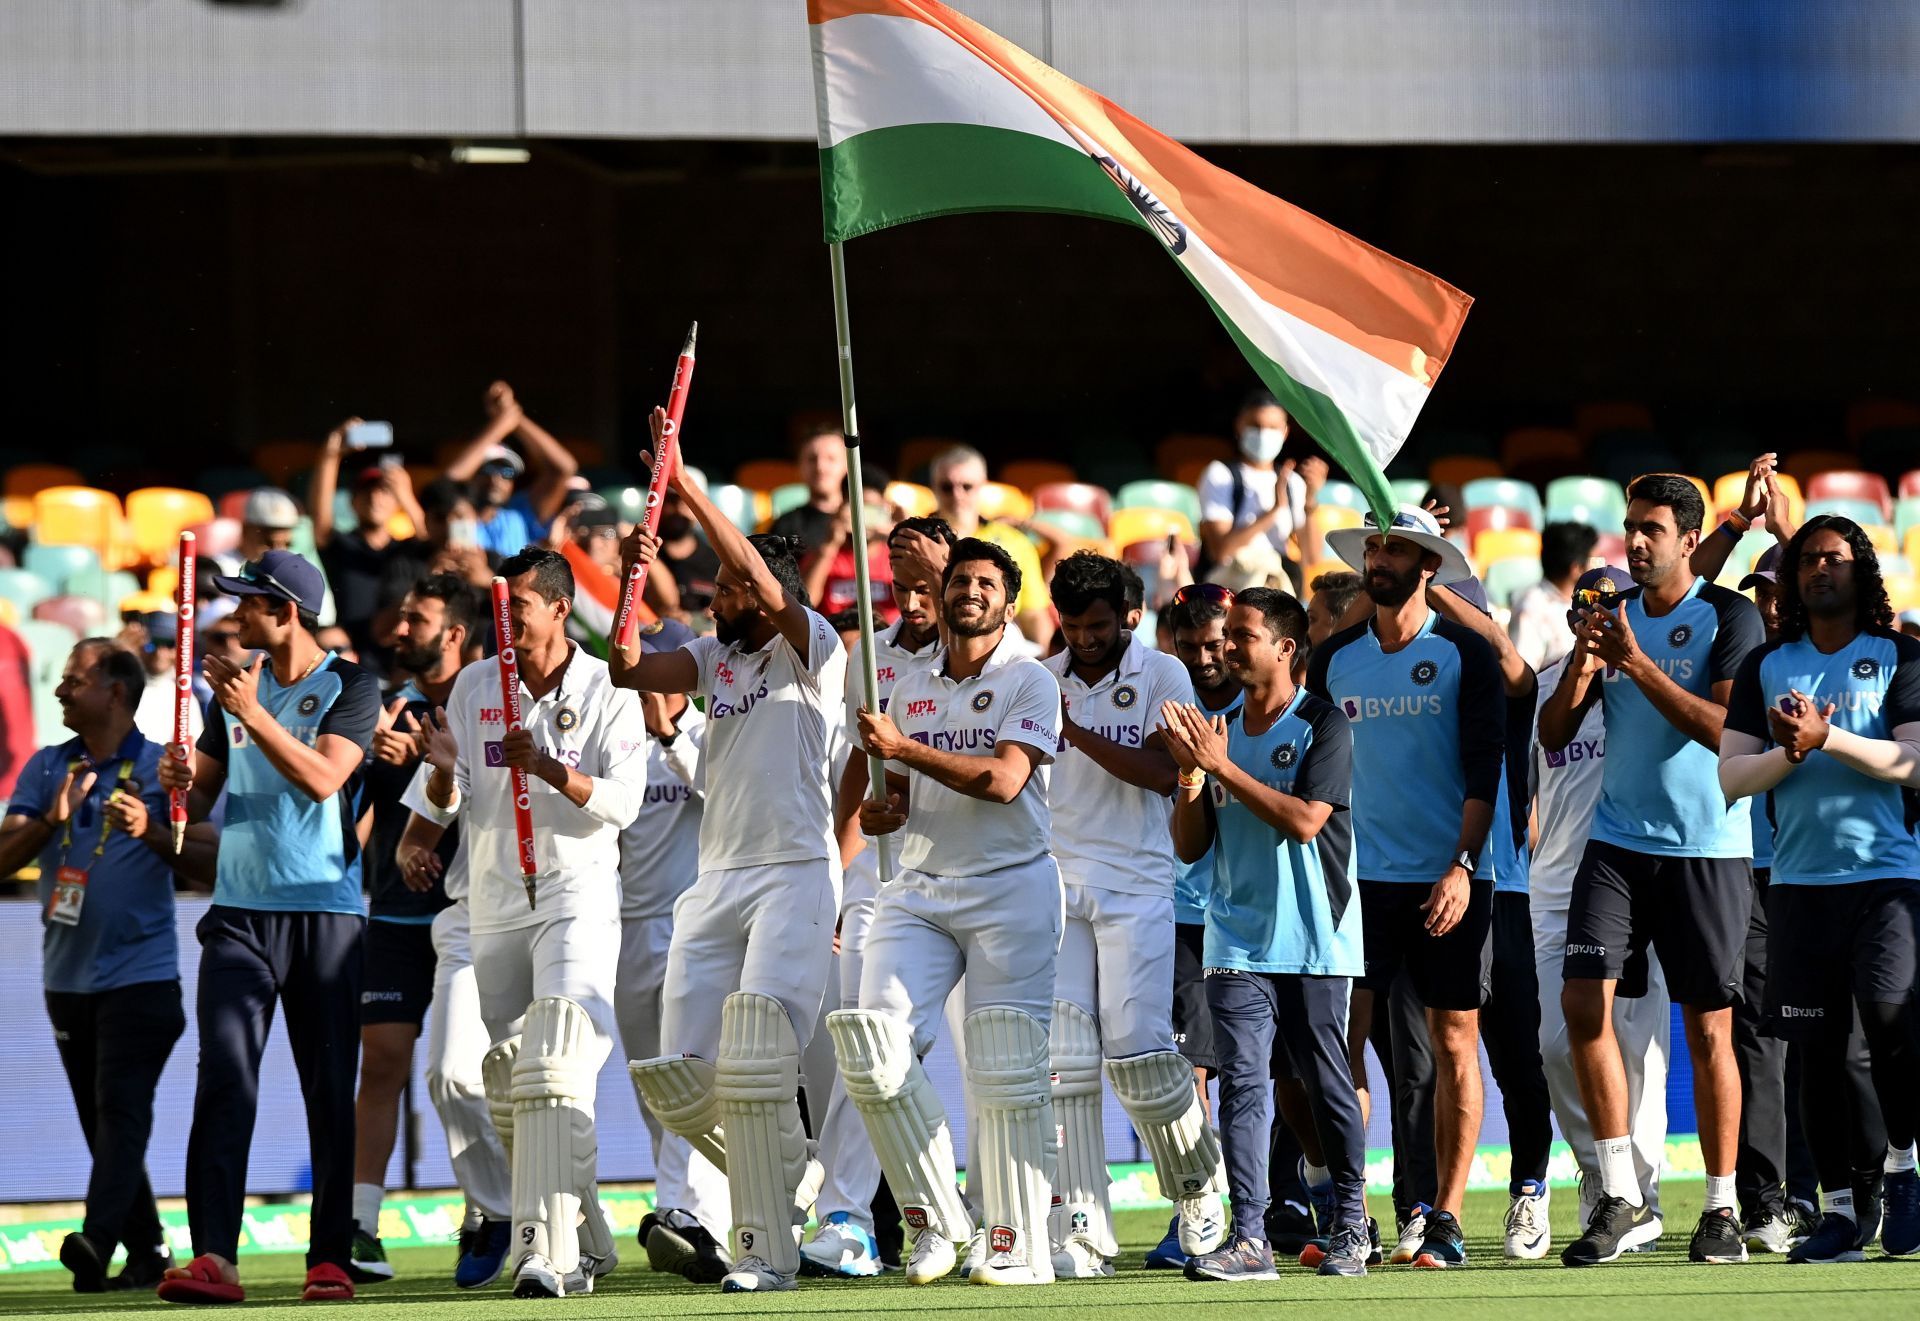 India has performed well even minus Jadeja in recent Tests.